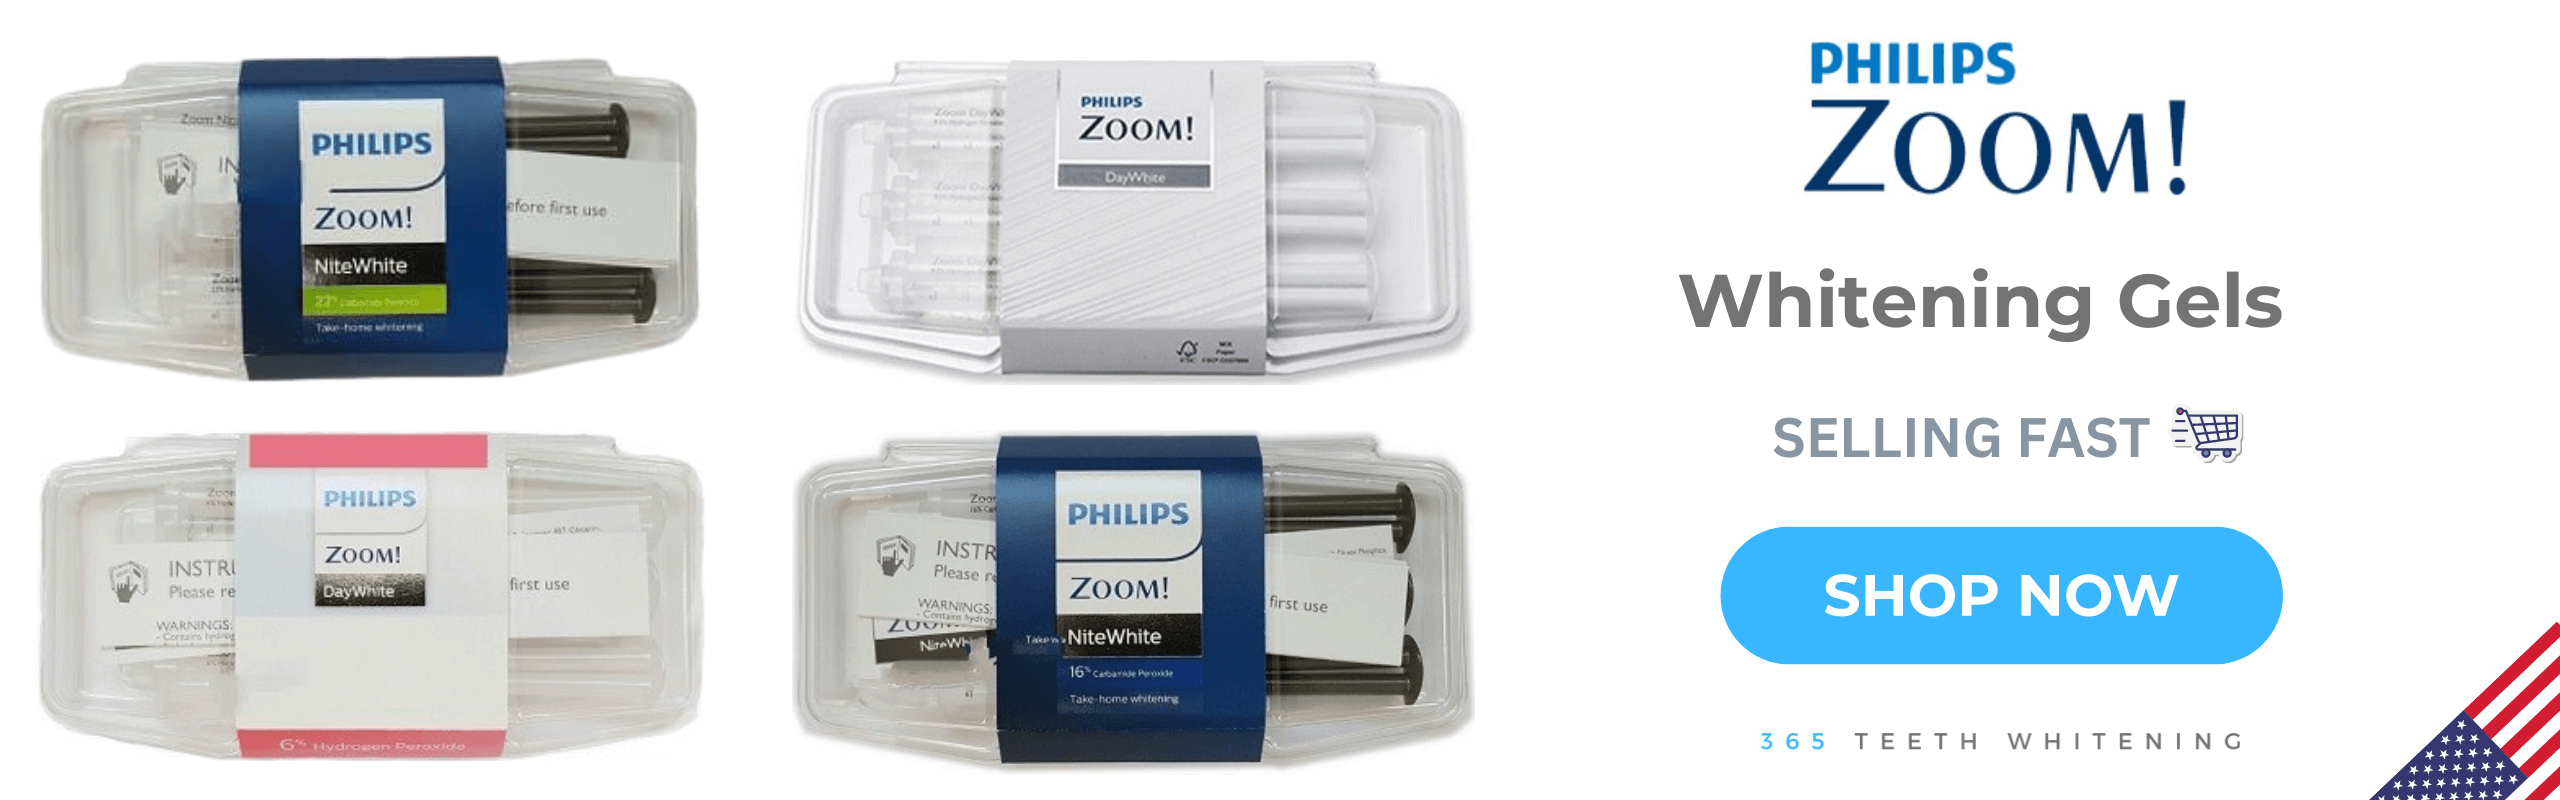 Philips Zoom Teeth Whitening Gels Banner Homepage